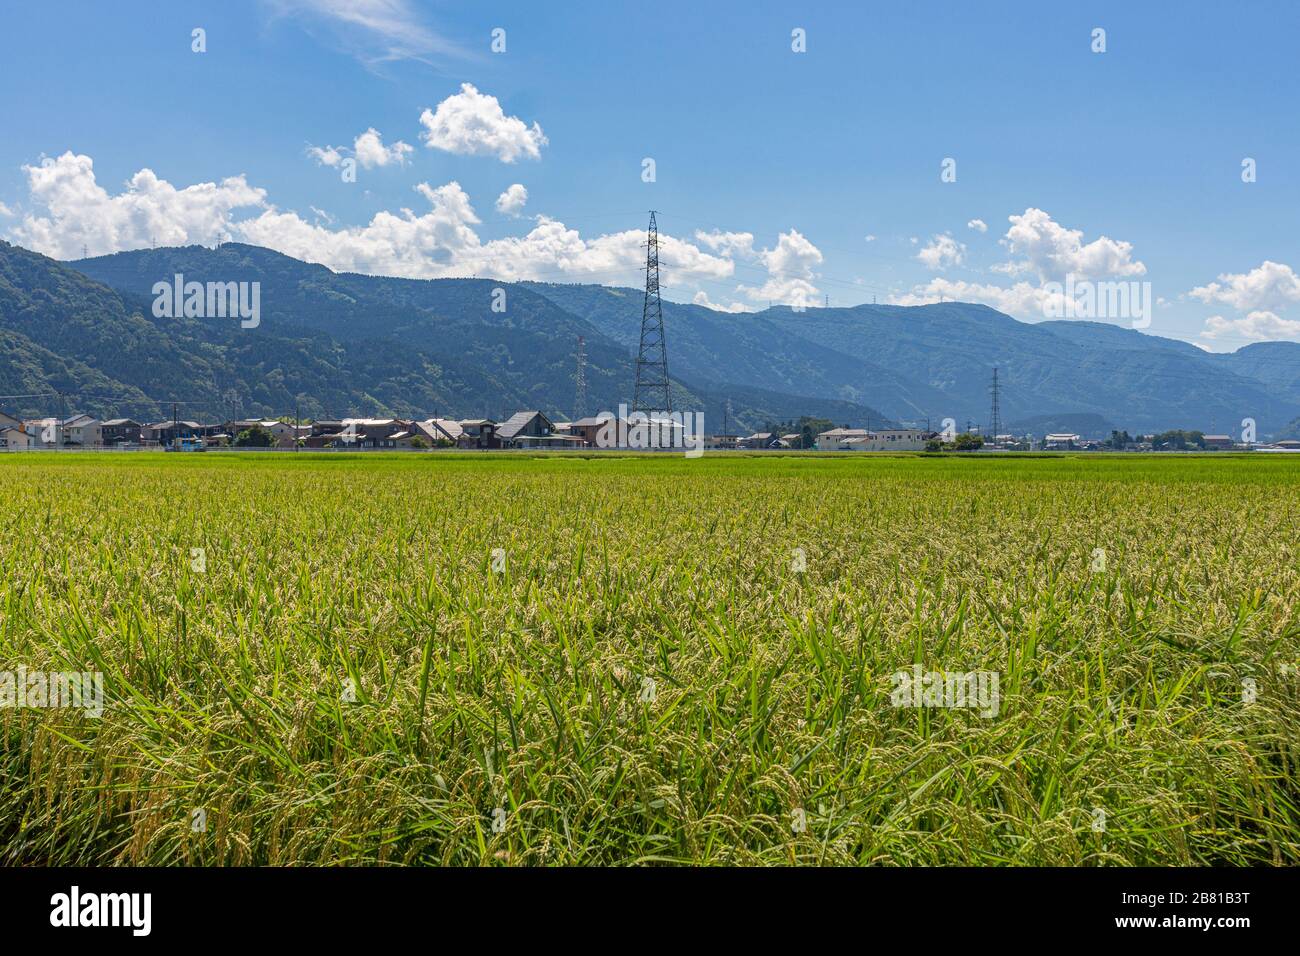 Vista estiva della campagna risaie campo, pronto per la vendemmia, con pilone, casali e montagne sullo sfondo. Kanazawa, Prefettura di Ishikawa, Foto Stock